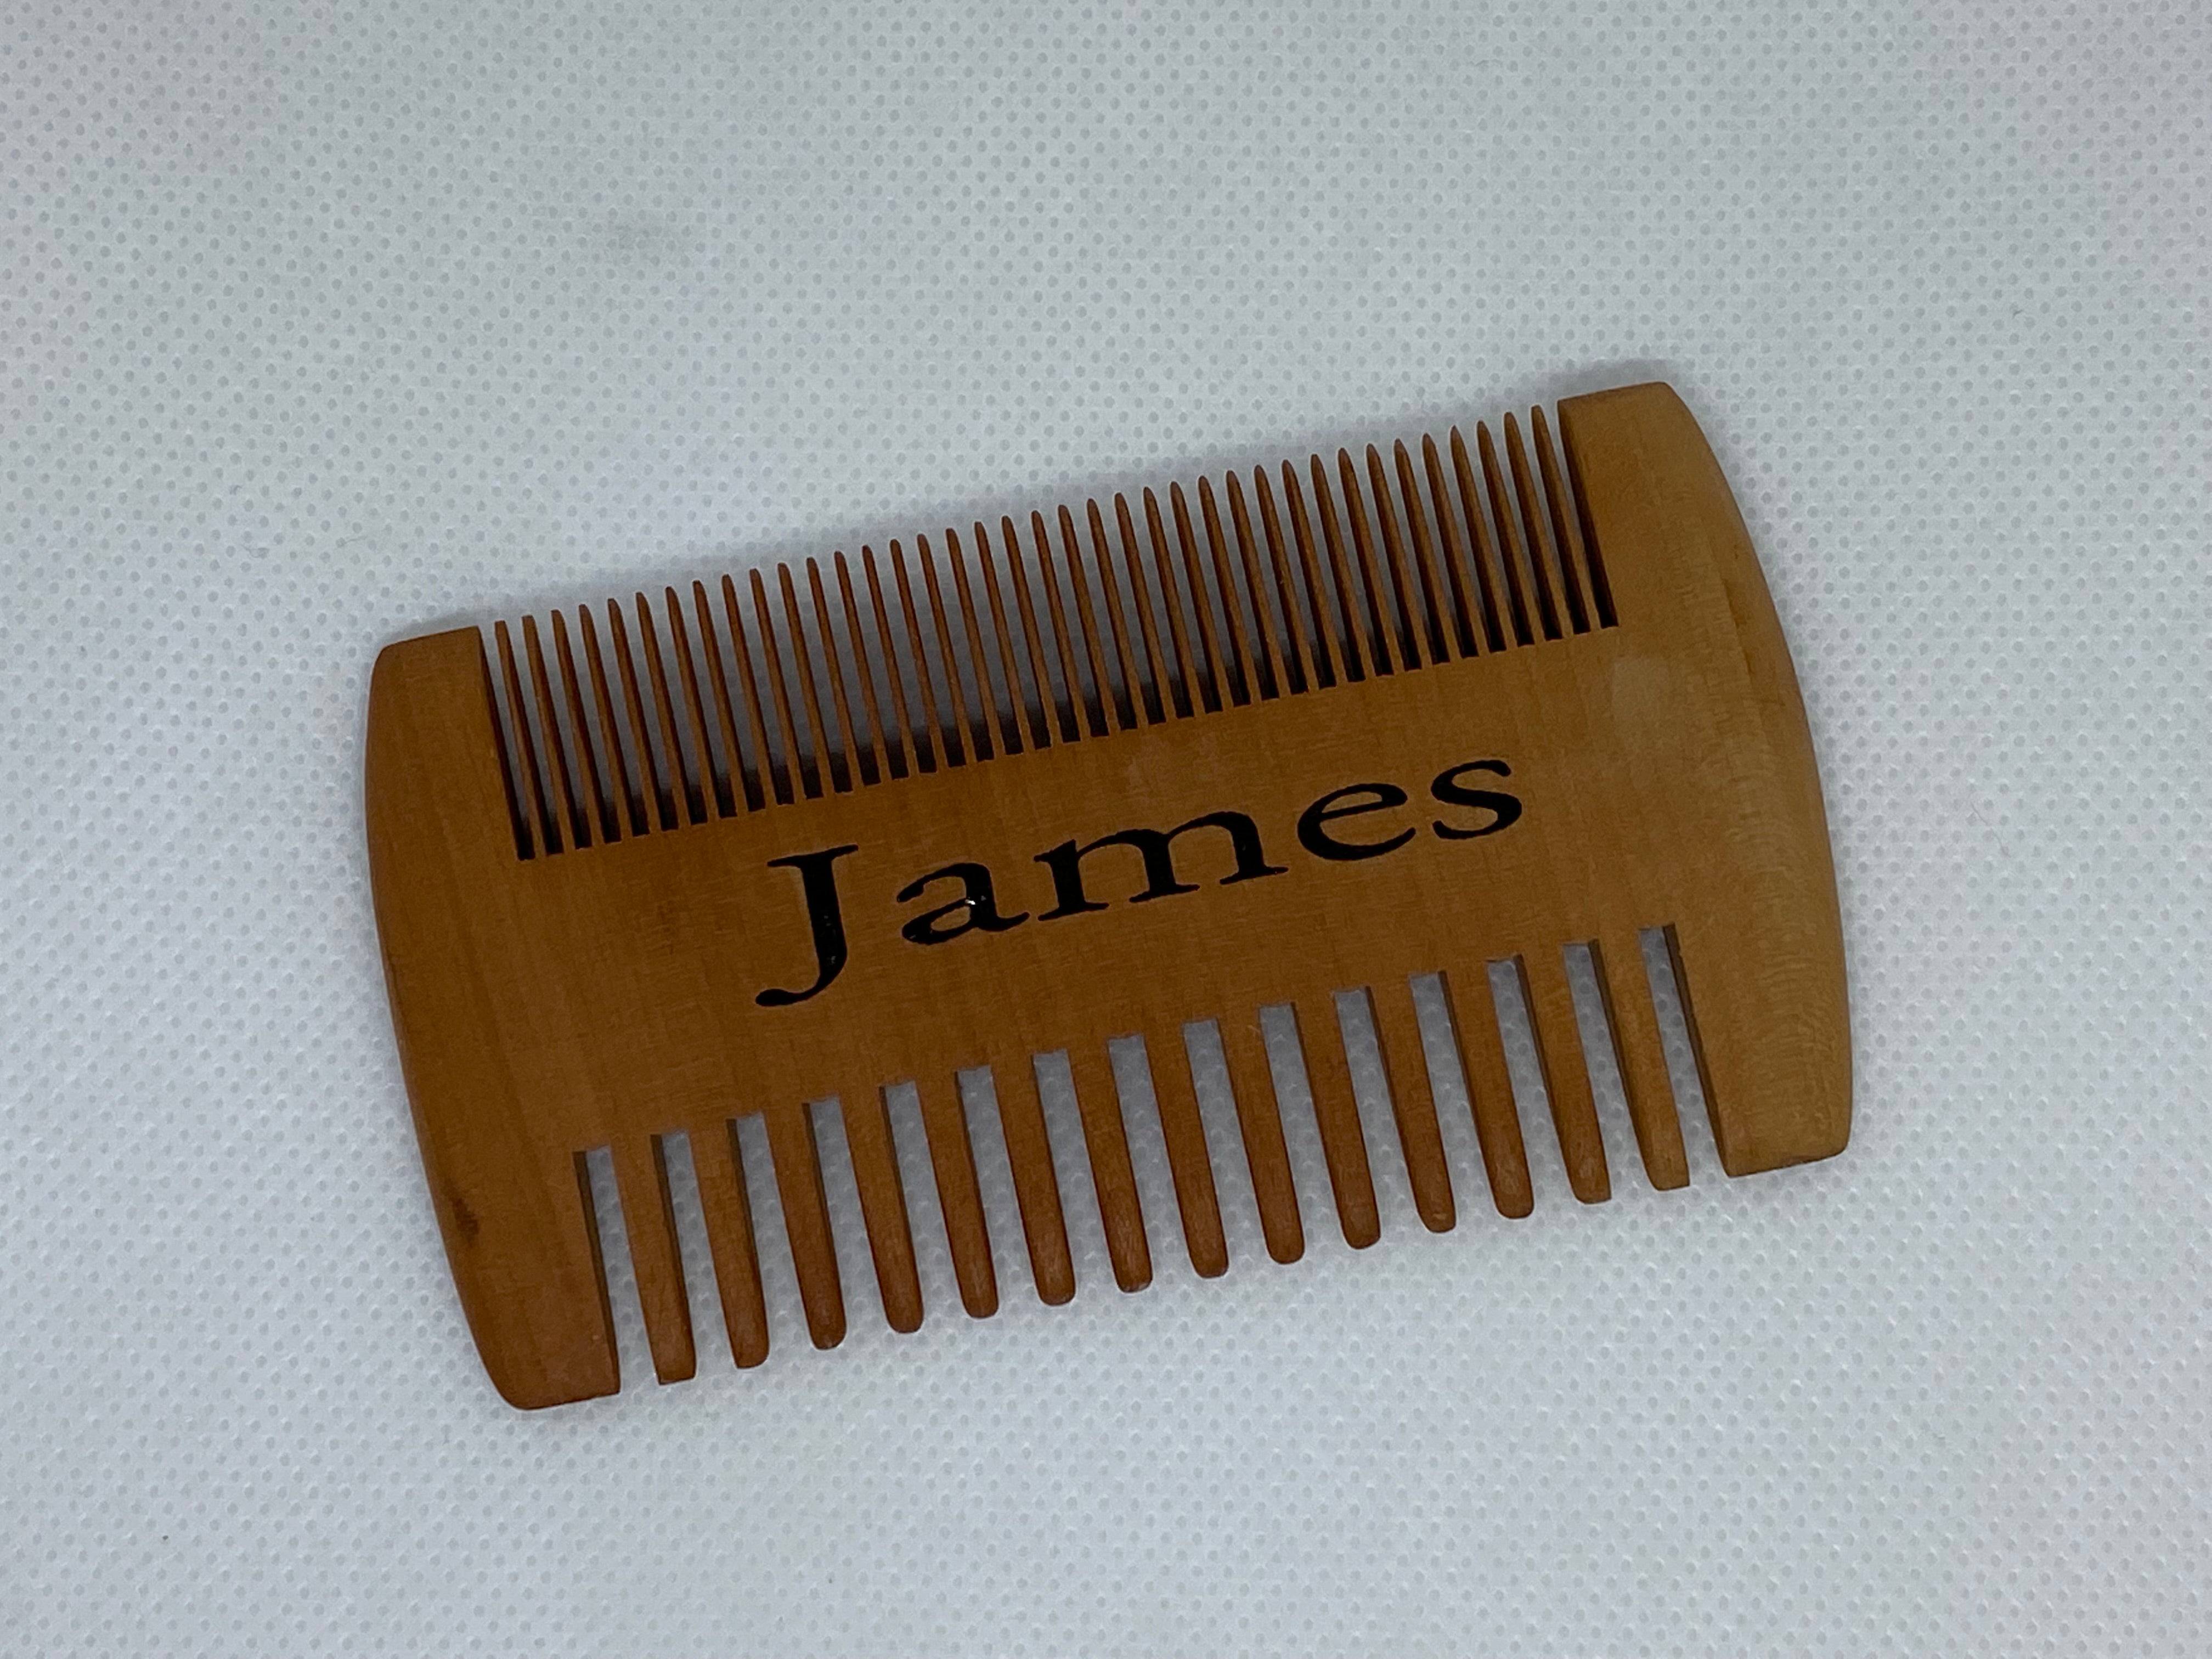 Customizable beard combs